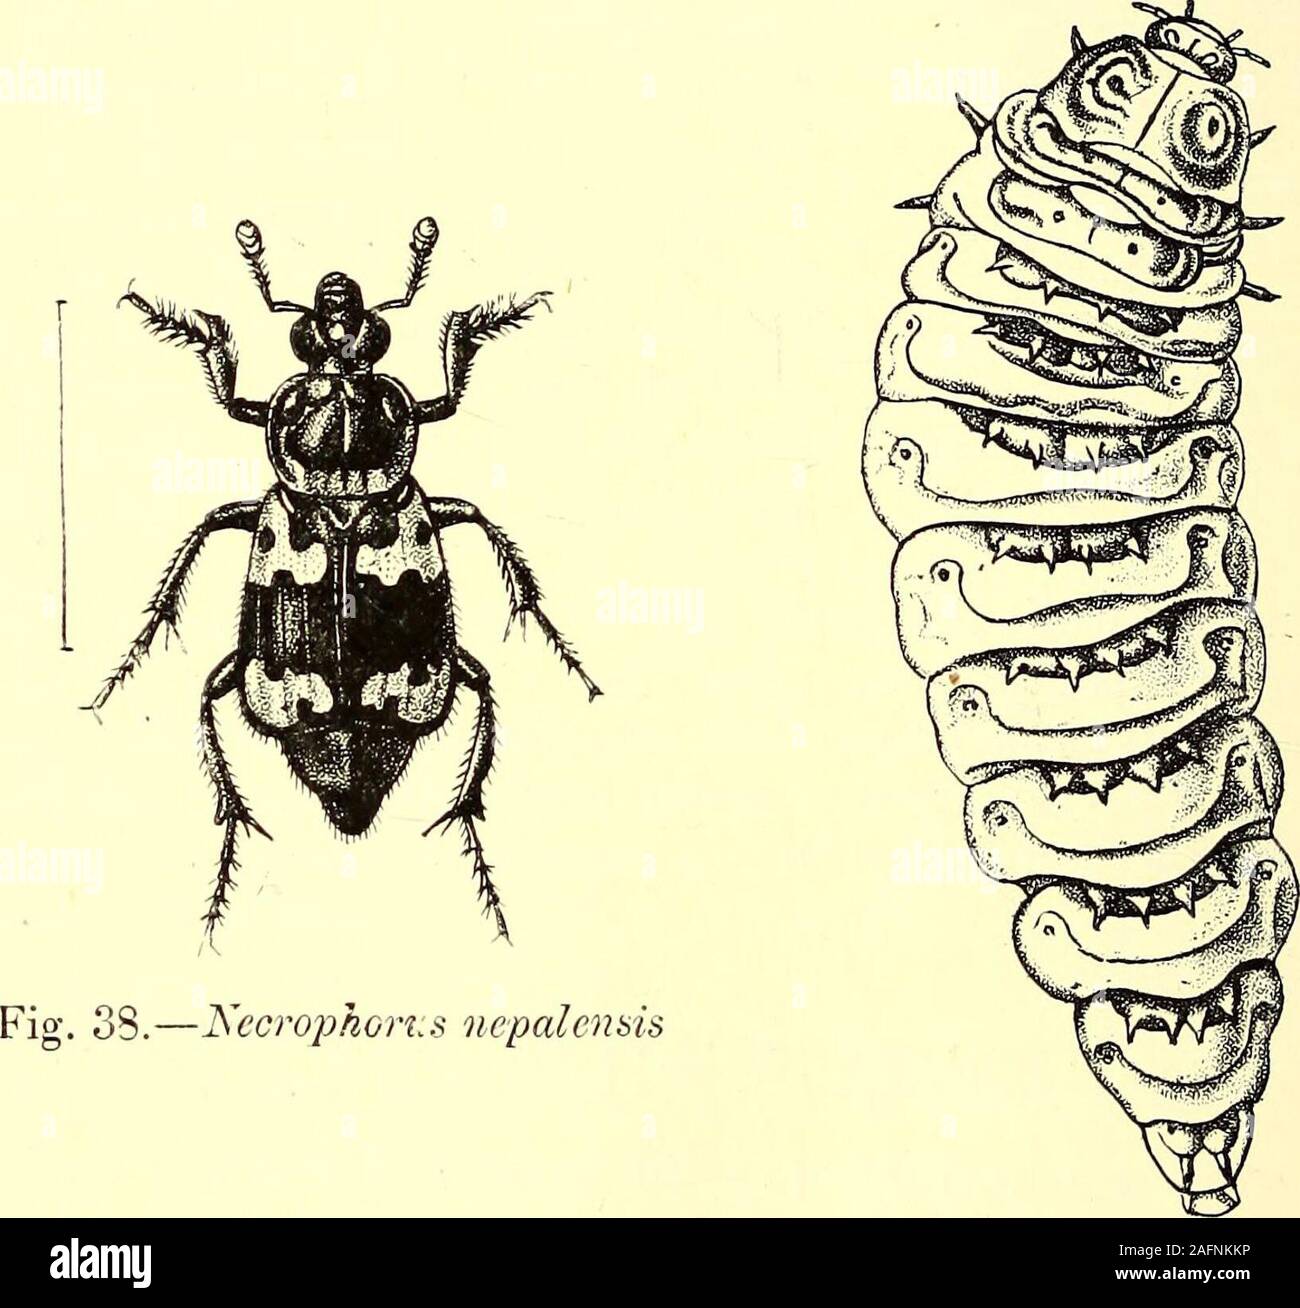 . Coleoptera : introduzione generale e Cicindelidae e Paussidae. 84 INTRODUZIONE. eretto in una distinta famiglia, ma sembrano differire da theISilphid^e soltanto nella formazione dell'anteriore e coxae theirsurroundings. Un gran numero di cieco caverna-insetti del generaBatJiyscia, Adelops, ecc., appartengono alla famiglia. Le larve di vari generi sono molto diversi, quelli ofNecrophorus essendo grande, carnosa, le larve inattivi, con piccole spinoseplates sui segmenti di dorsale, mentre quelli di Silpha, nella maggior parte dei casi,sono molto attivi e sono onisciform, o sagomata come il legno-pidocchi, conla segmen Foto Stock